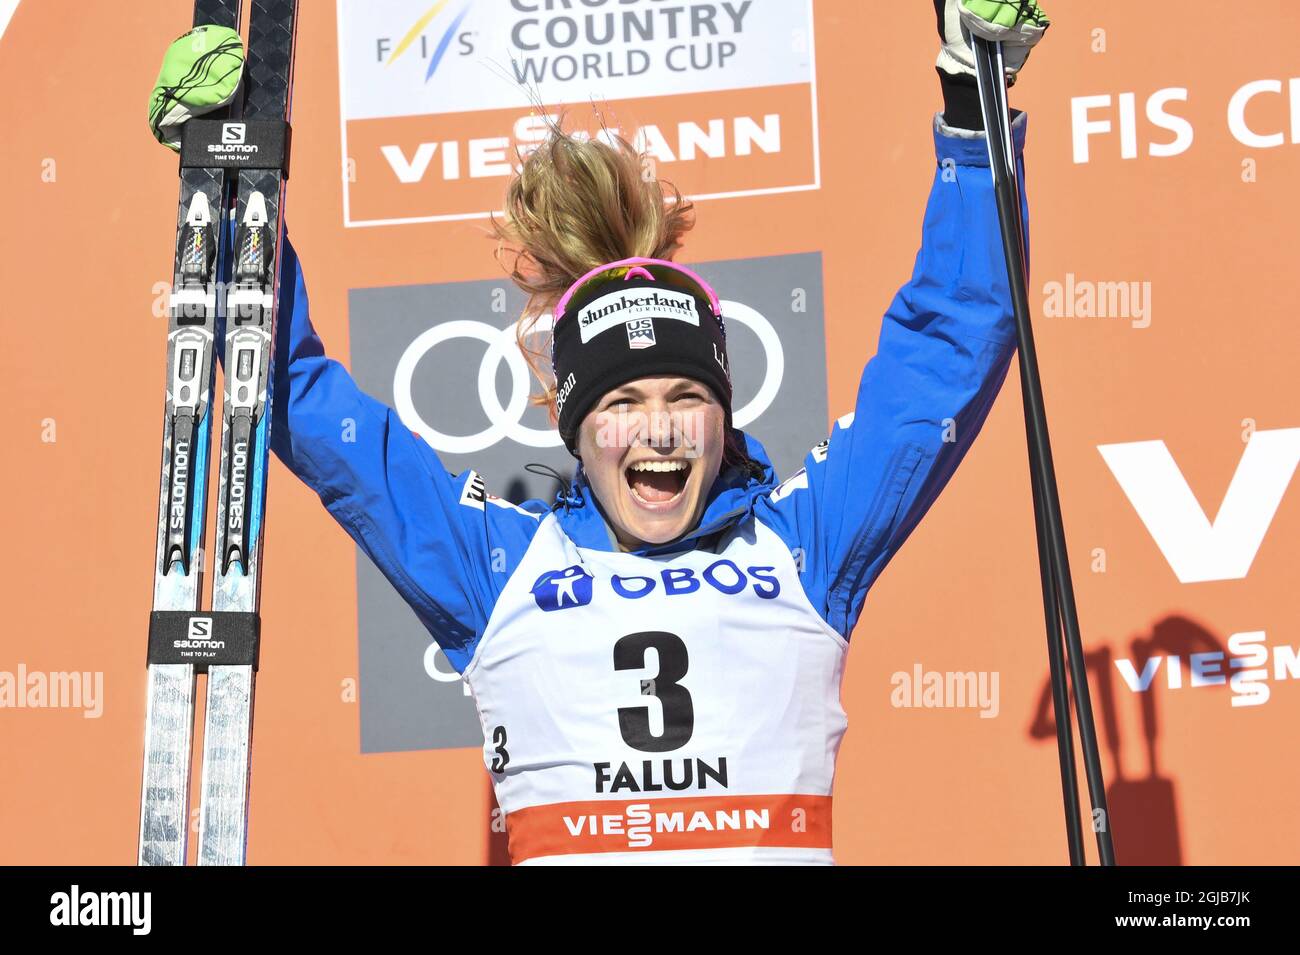 FALUN 20180318 Jessica Diggins USA feiern auf dem Podium ihren zweiten Platz in der FIS 10 km Cross Country Free Style Sonntag, 18. März 2018 in Falun Schweden. Foto: Ulf Palm / TT kod 9110 Stockfoto